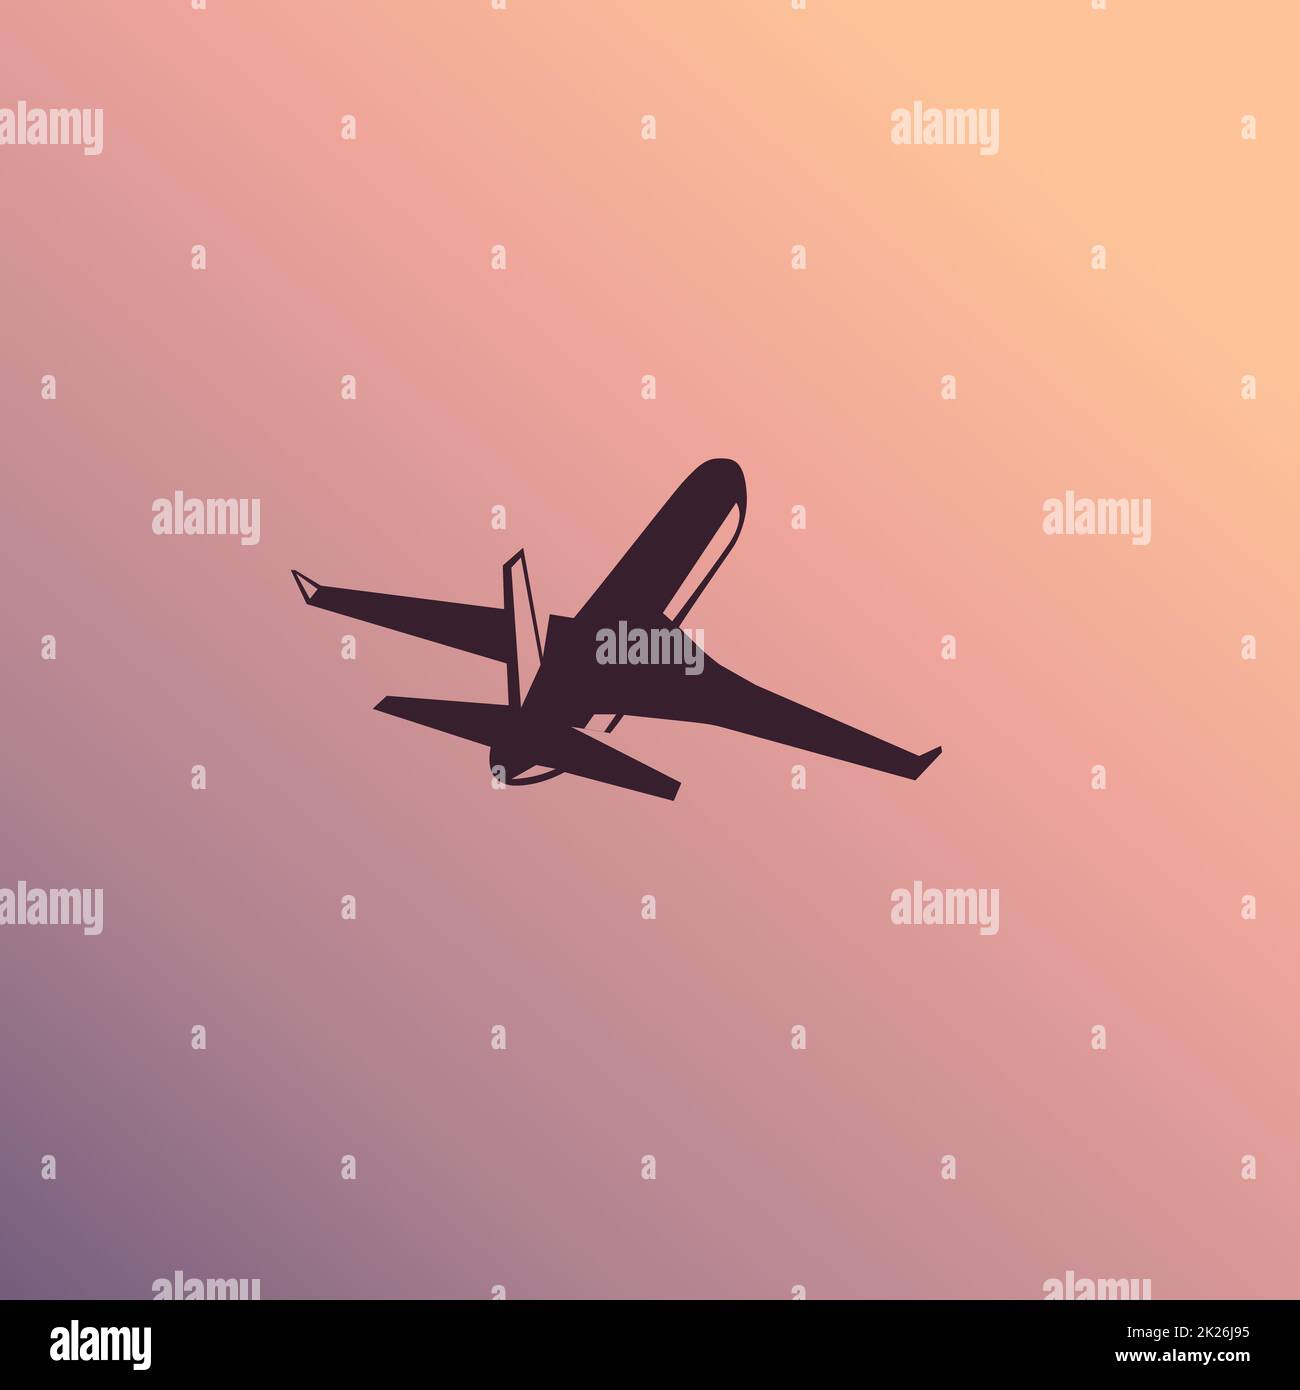 Isolated airliner, airplane vector illustration, logo, icon. Sunrise, sunshine background. Stock Photo